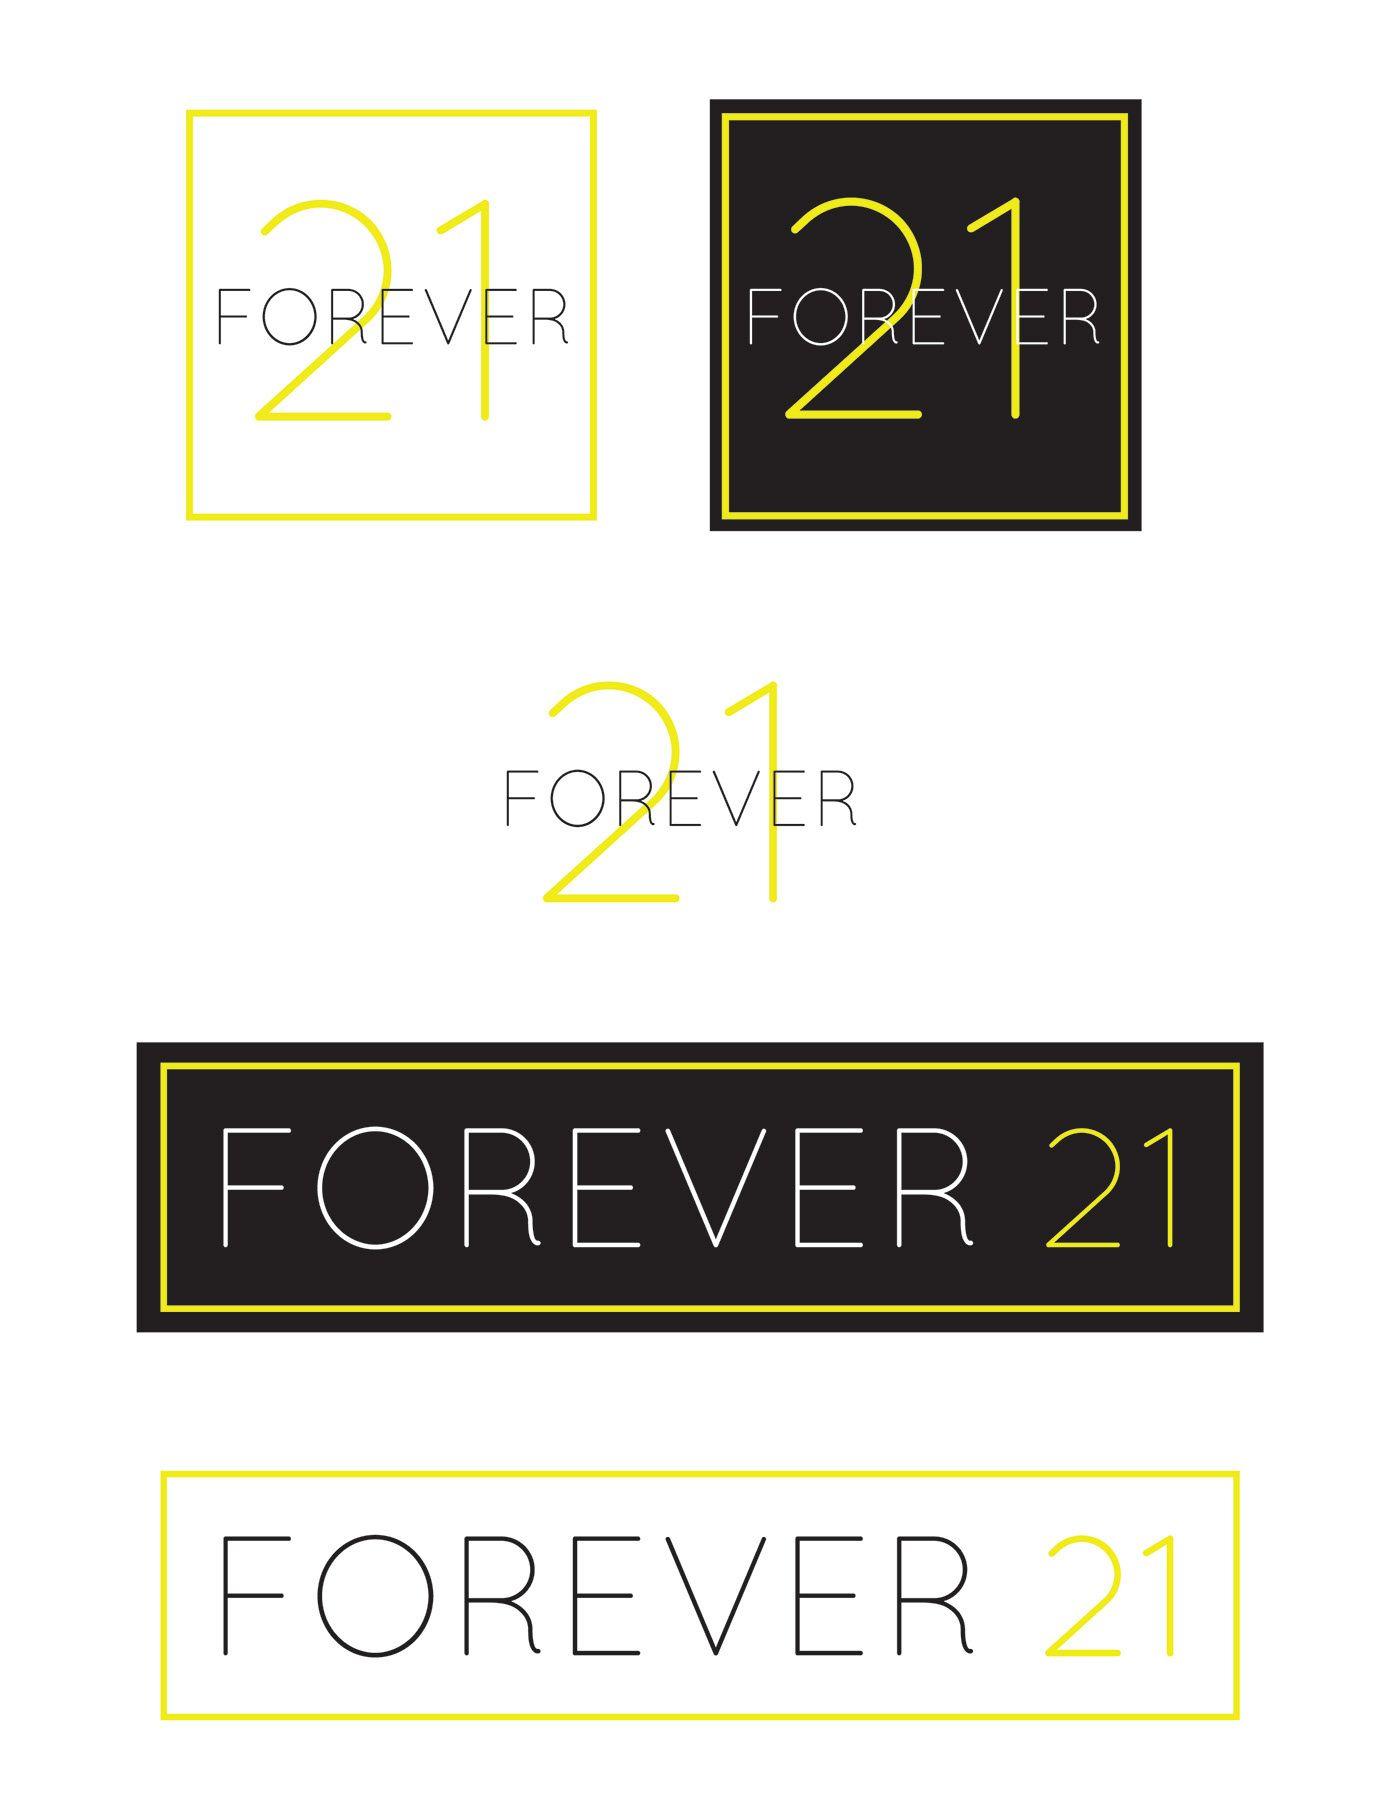 Forever 21 Company Logo